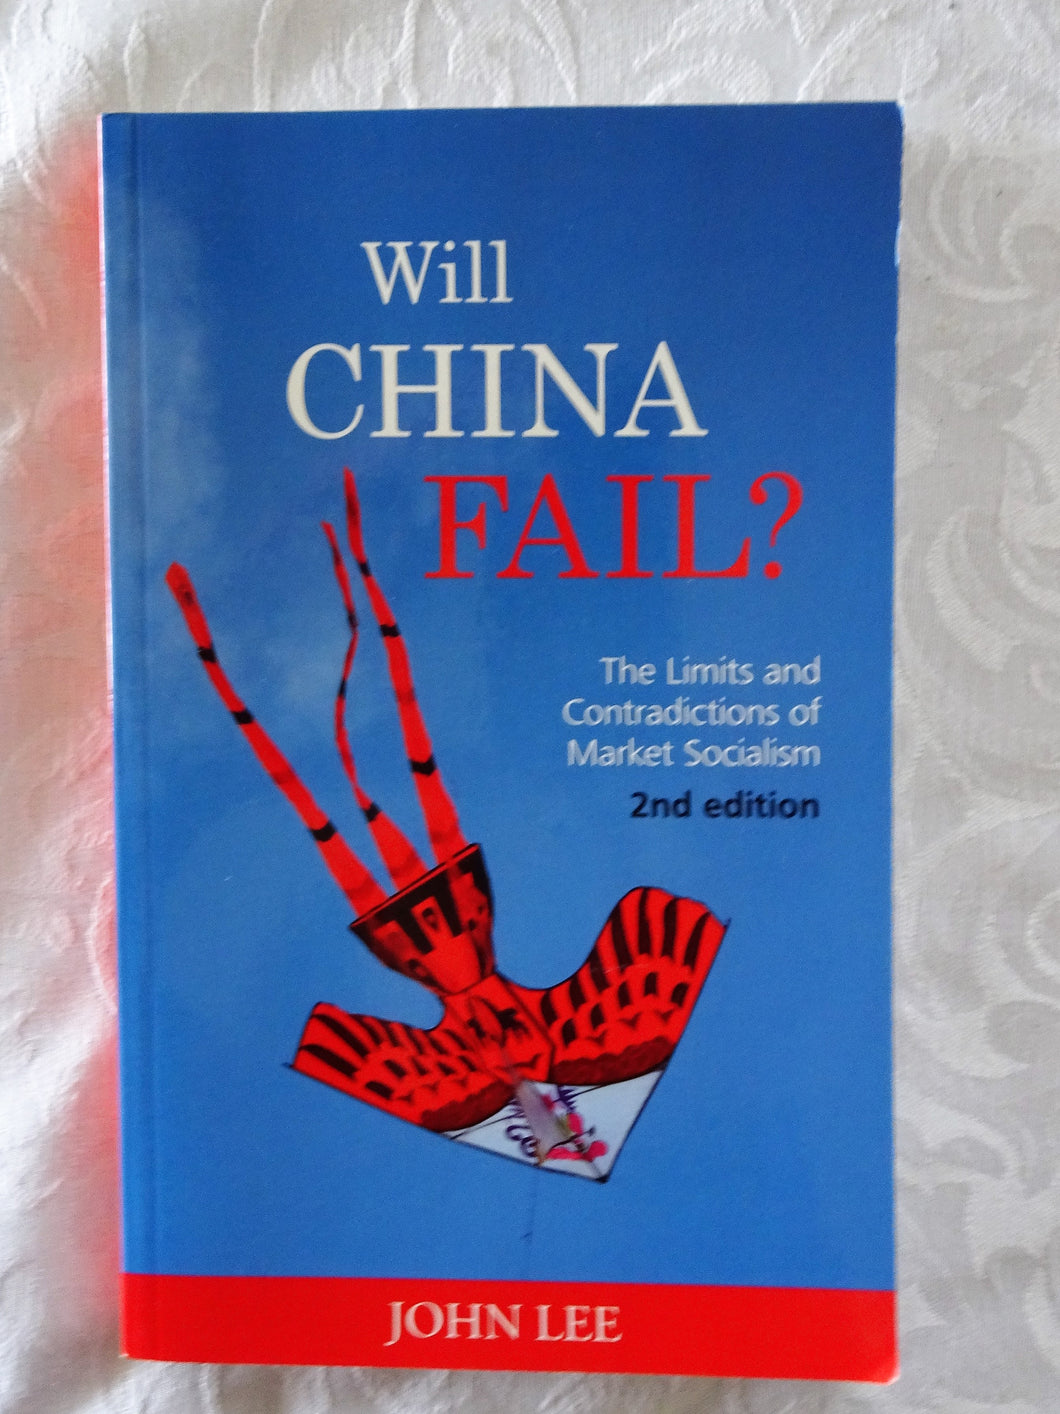 Will China Fail? by John Lee